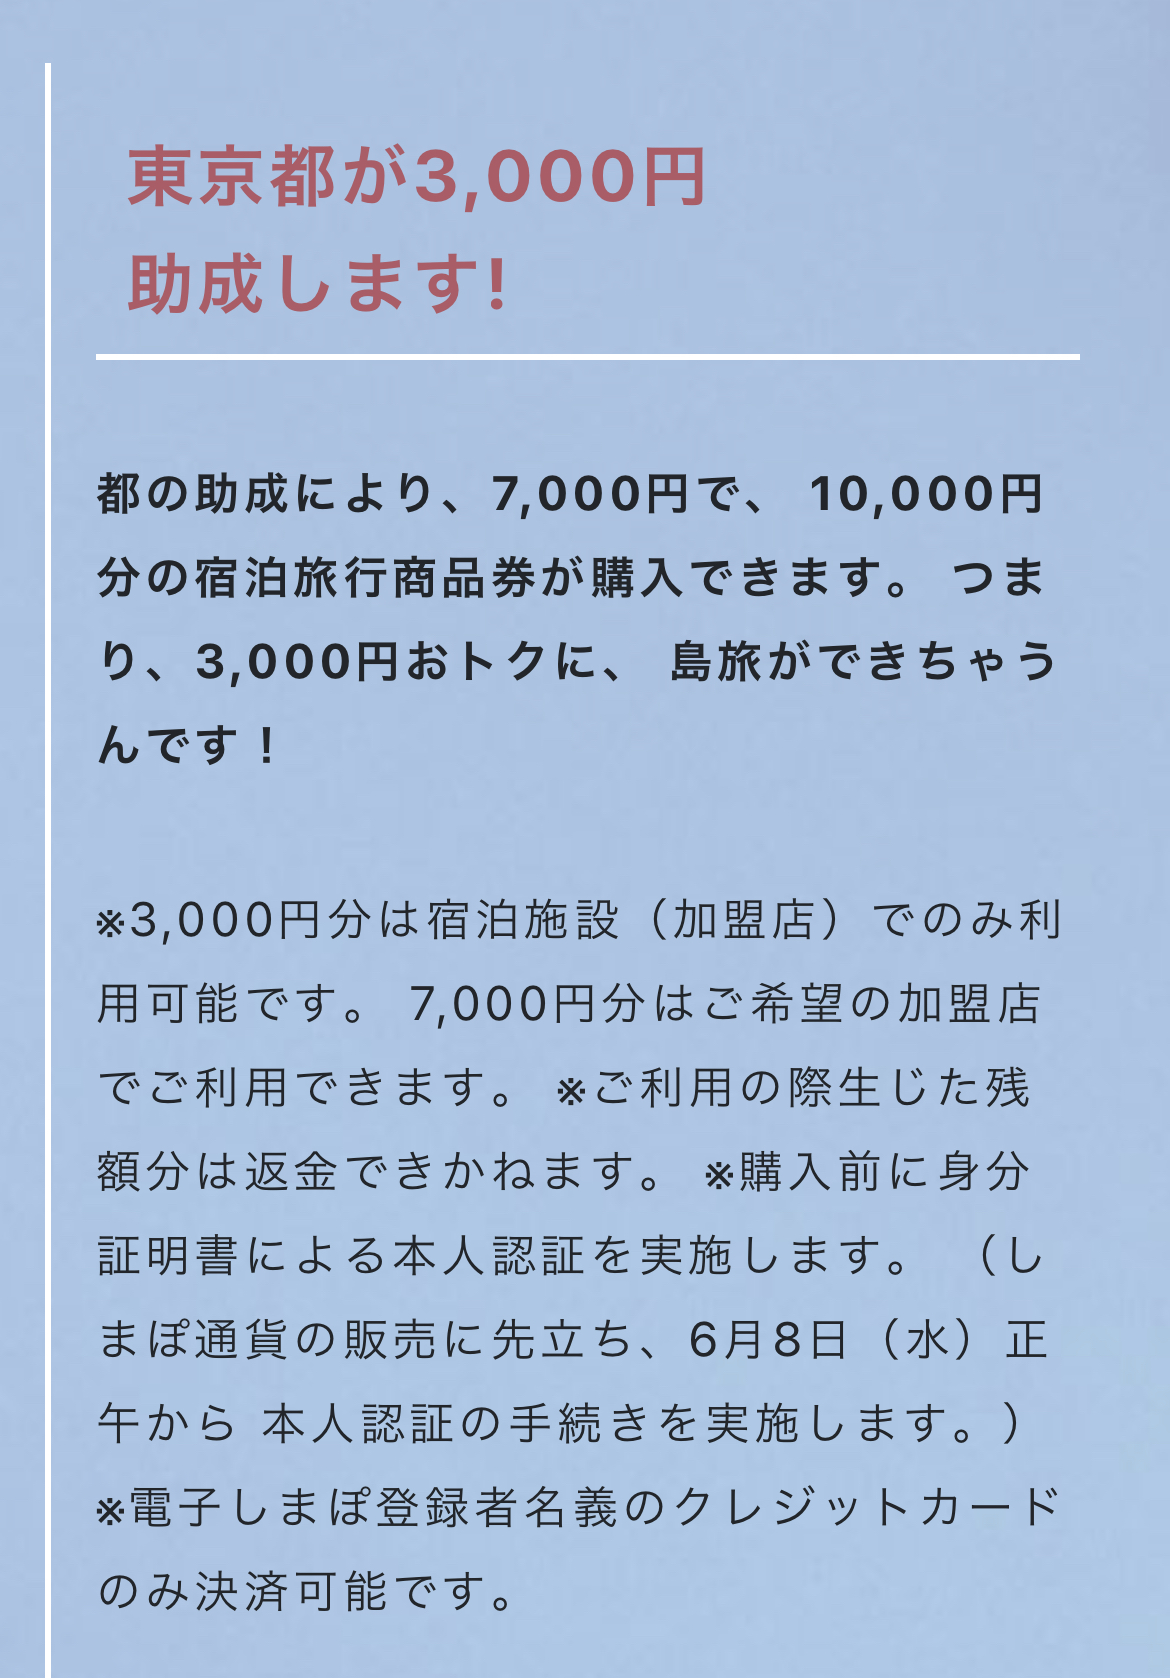 しまぽ通貨 東京都が3000円助成